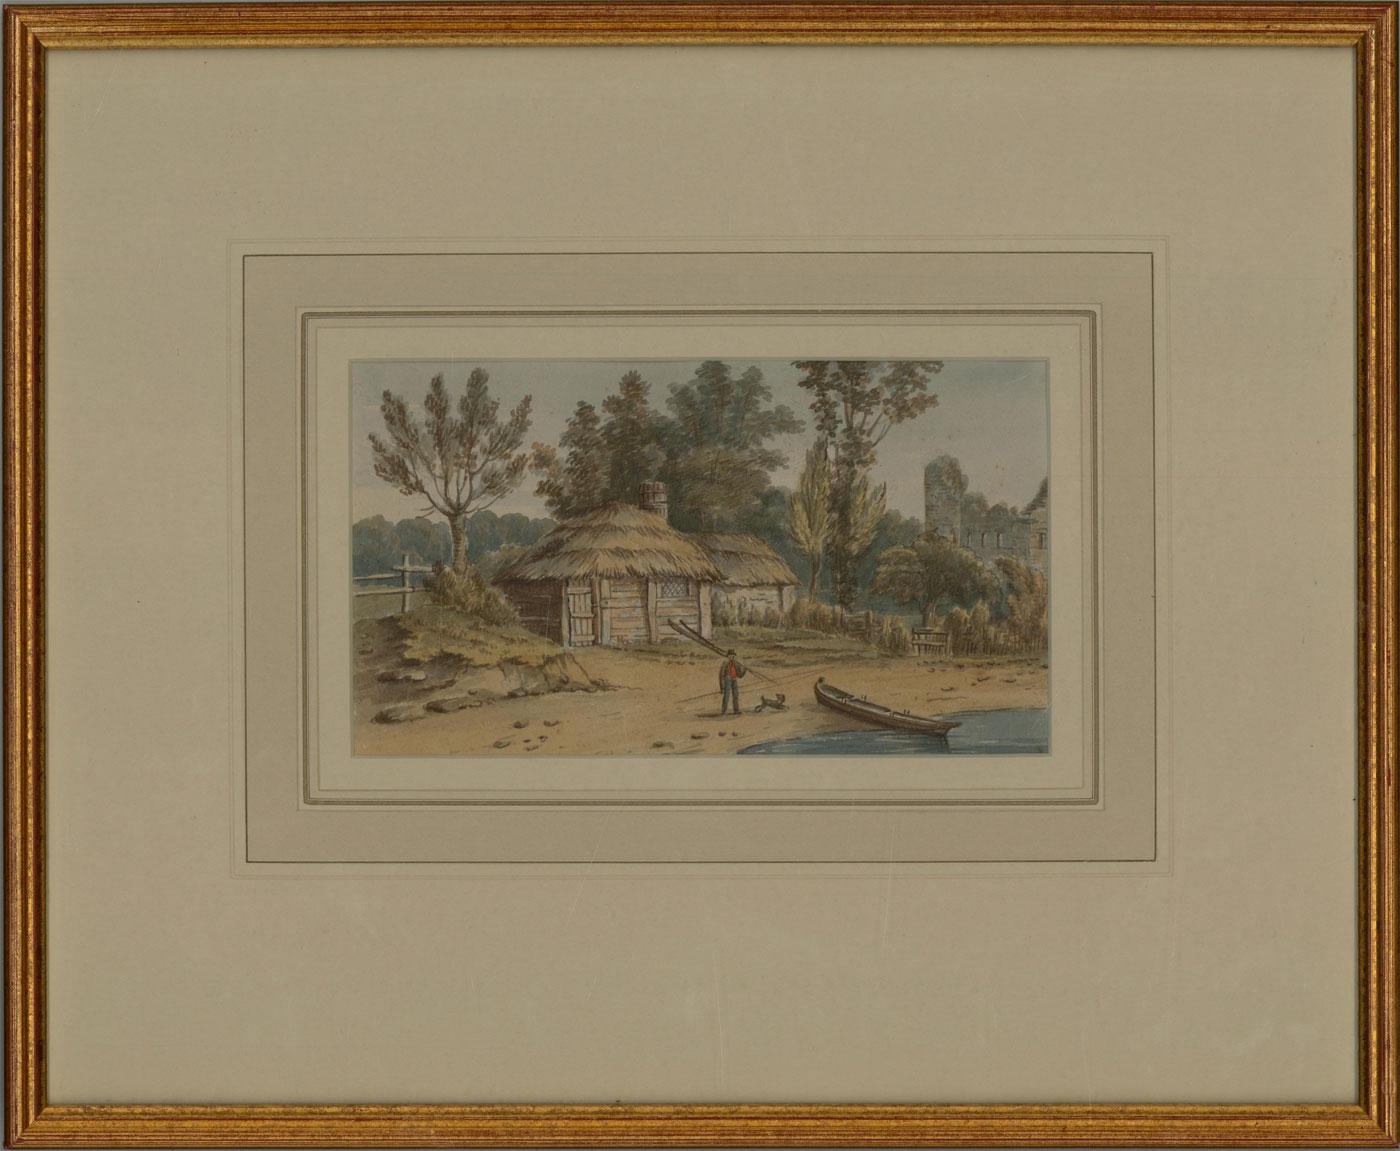 Ein schönes Aquarell, das eine Landschaft mit einem strohgedeckten Haus, einer männlichen Figur und einem Hund an einem Boot zeigt. Auf der Rückseite befindet sich ein Etikett, das dieses Gemälde Gideon Yates (act.1790-c.1837) zuschreibt, sowie der